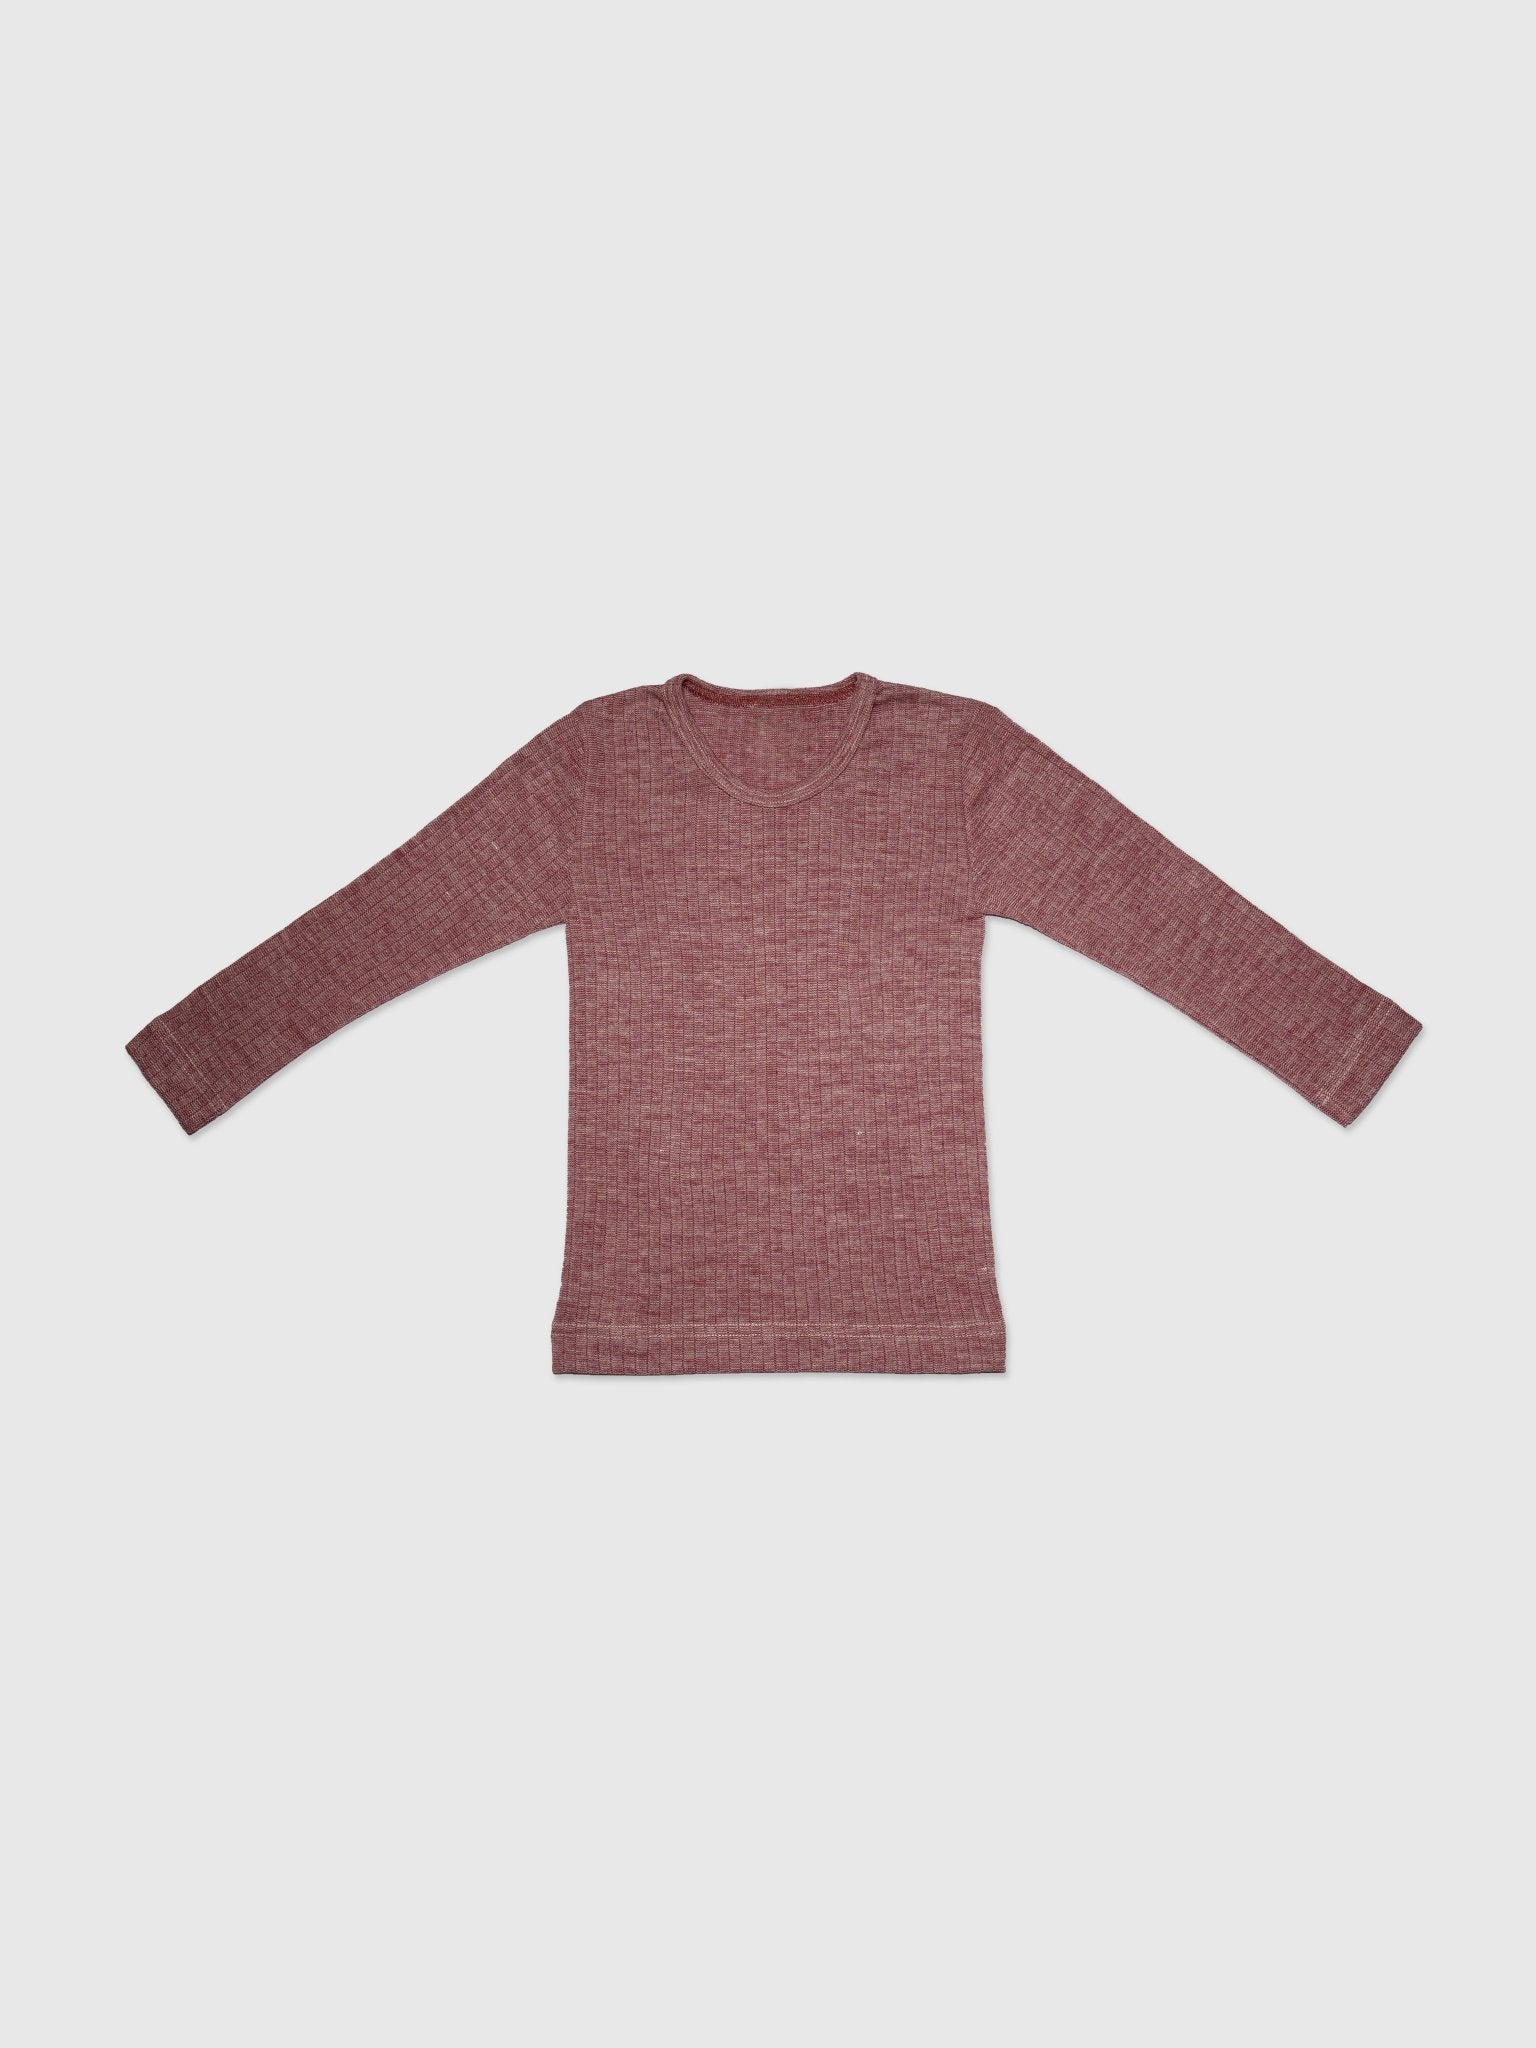 organic cotton, merino wool and silk shirt - berry - Lila New York LLC